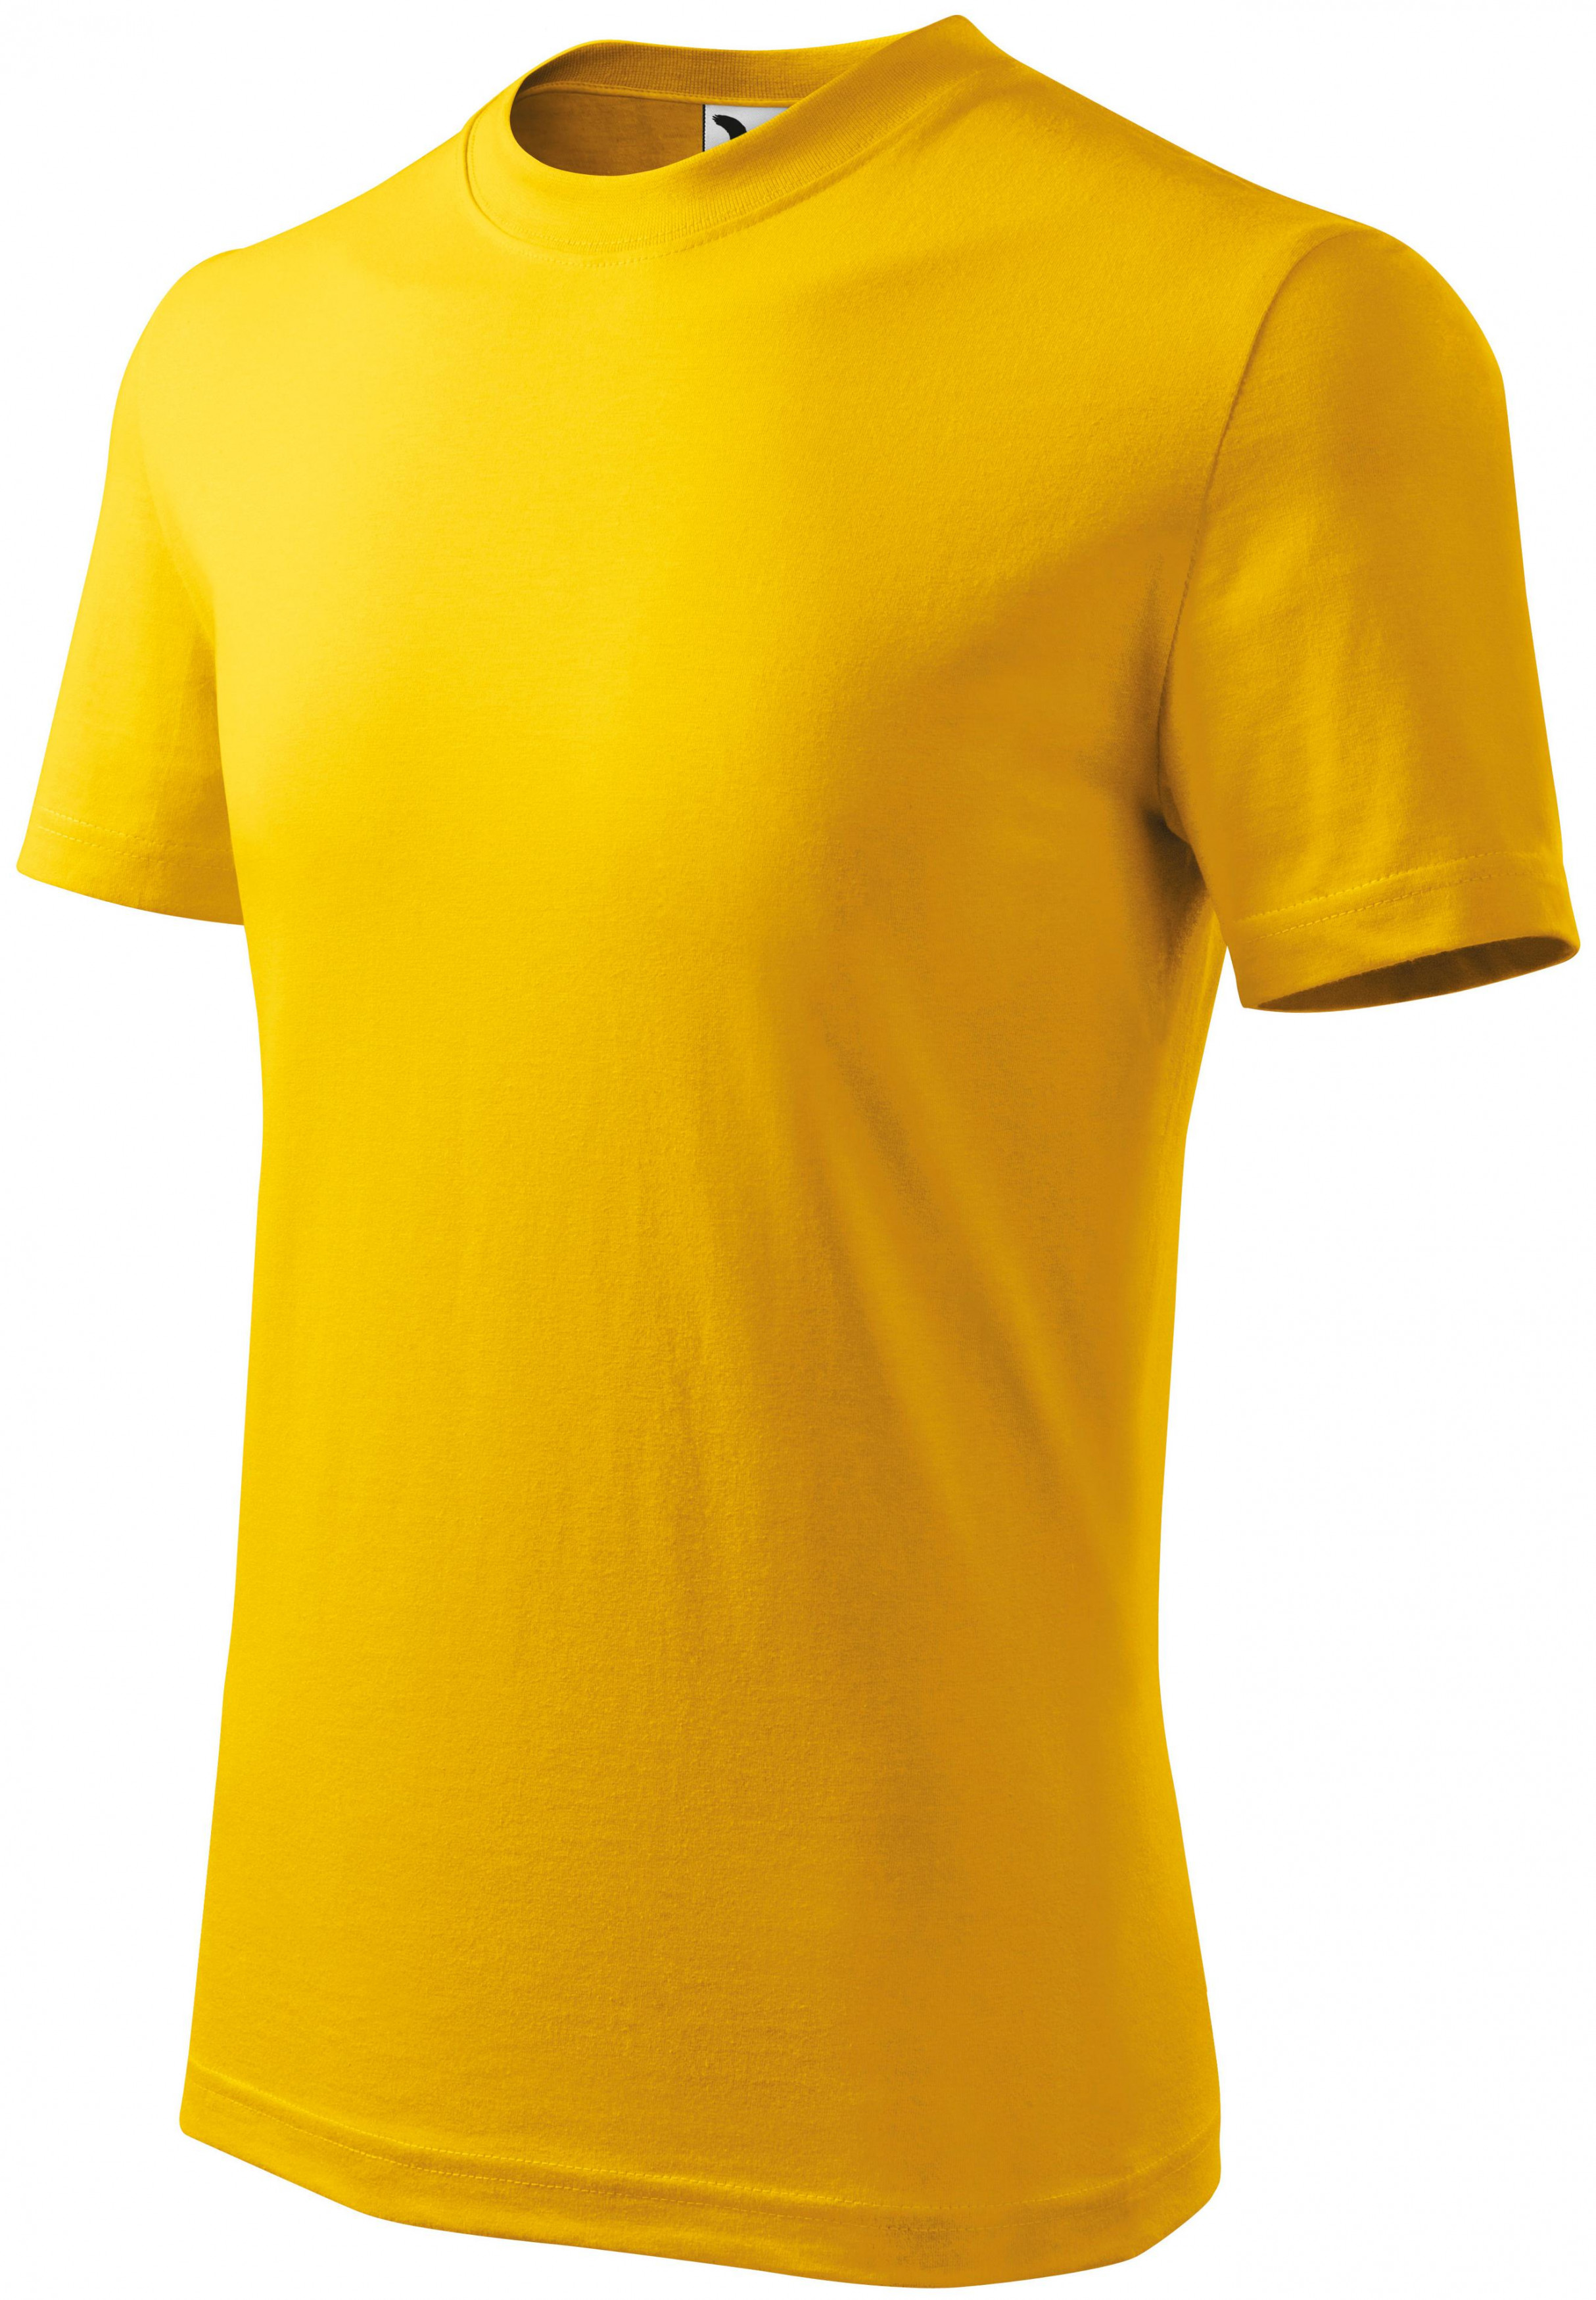 Detské tričko klasické, žltá, 122cm / 6rokov